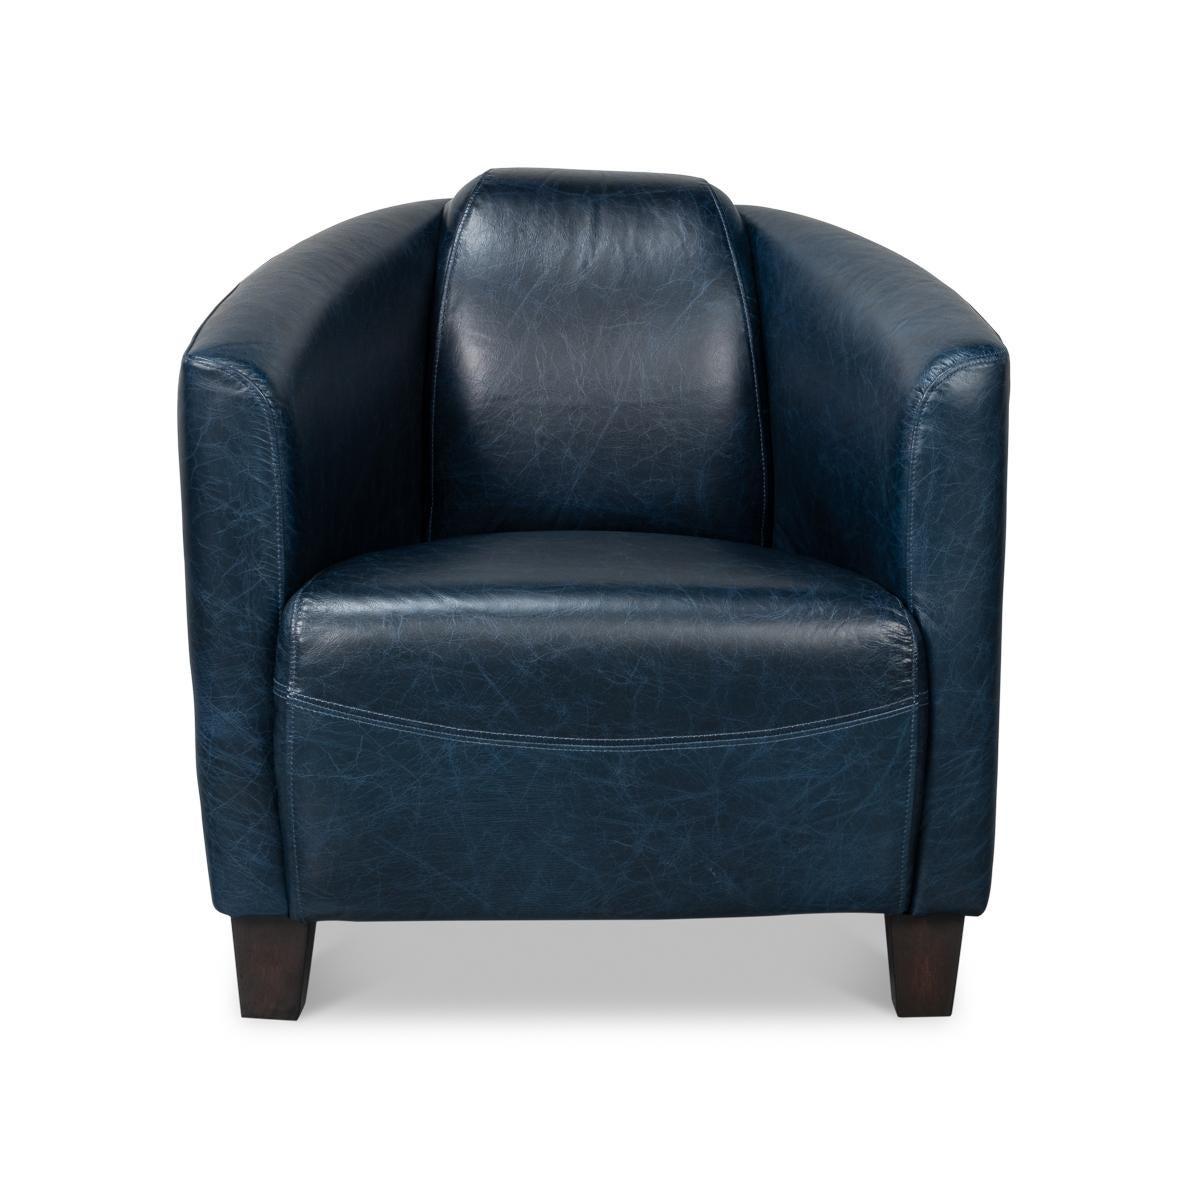 Fabriqué en cuir luxueux de première qualité dans une magnifique teinte bleue, ce fauteuil élégant et confortable est parfait pour votre salle de séjour, votre bibliothèque ou votre salon.
Les variations de couleur sont courantes et acceptables sur